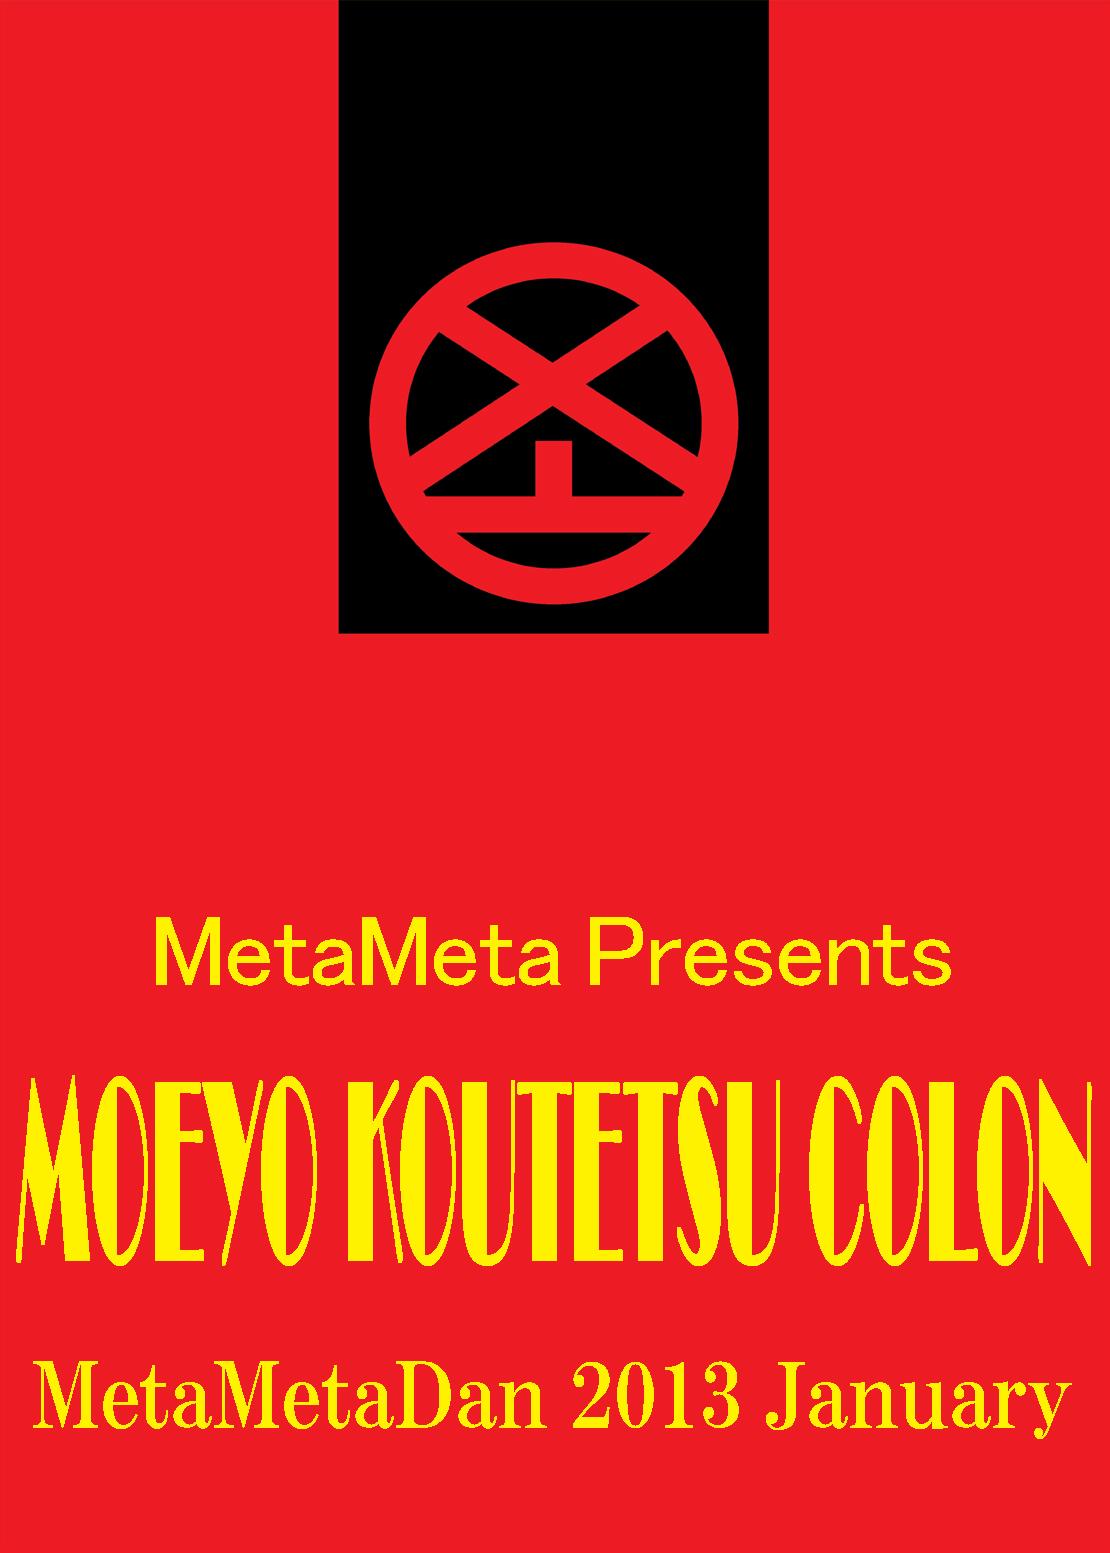 MOEYO KOUTETSU COLON 35